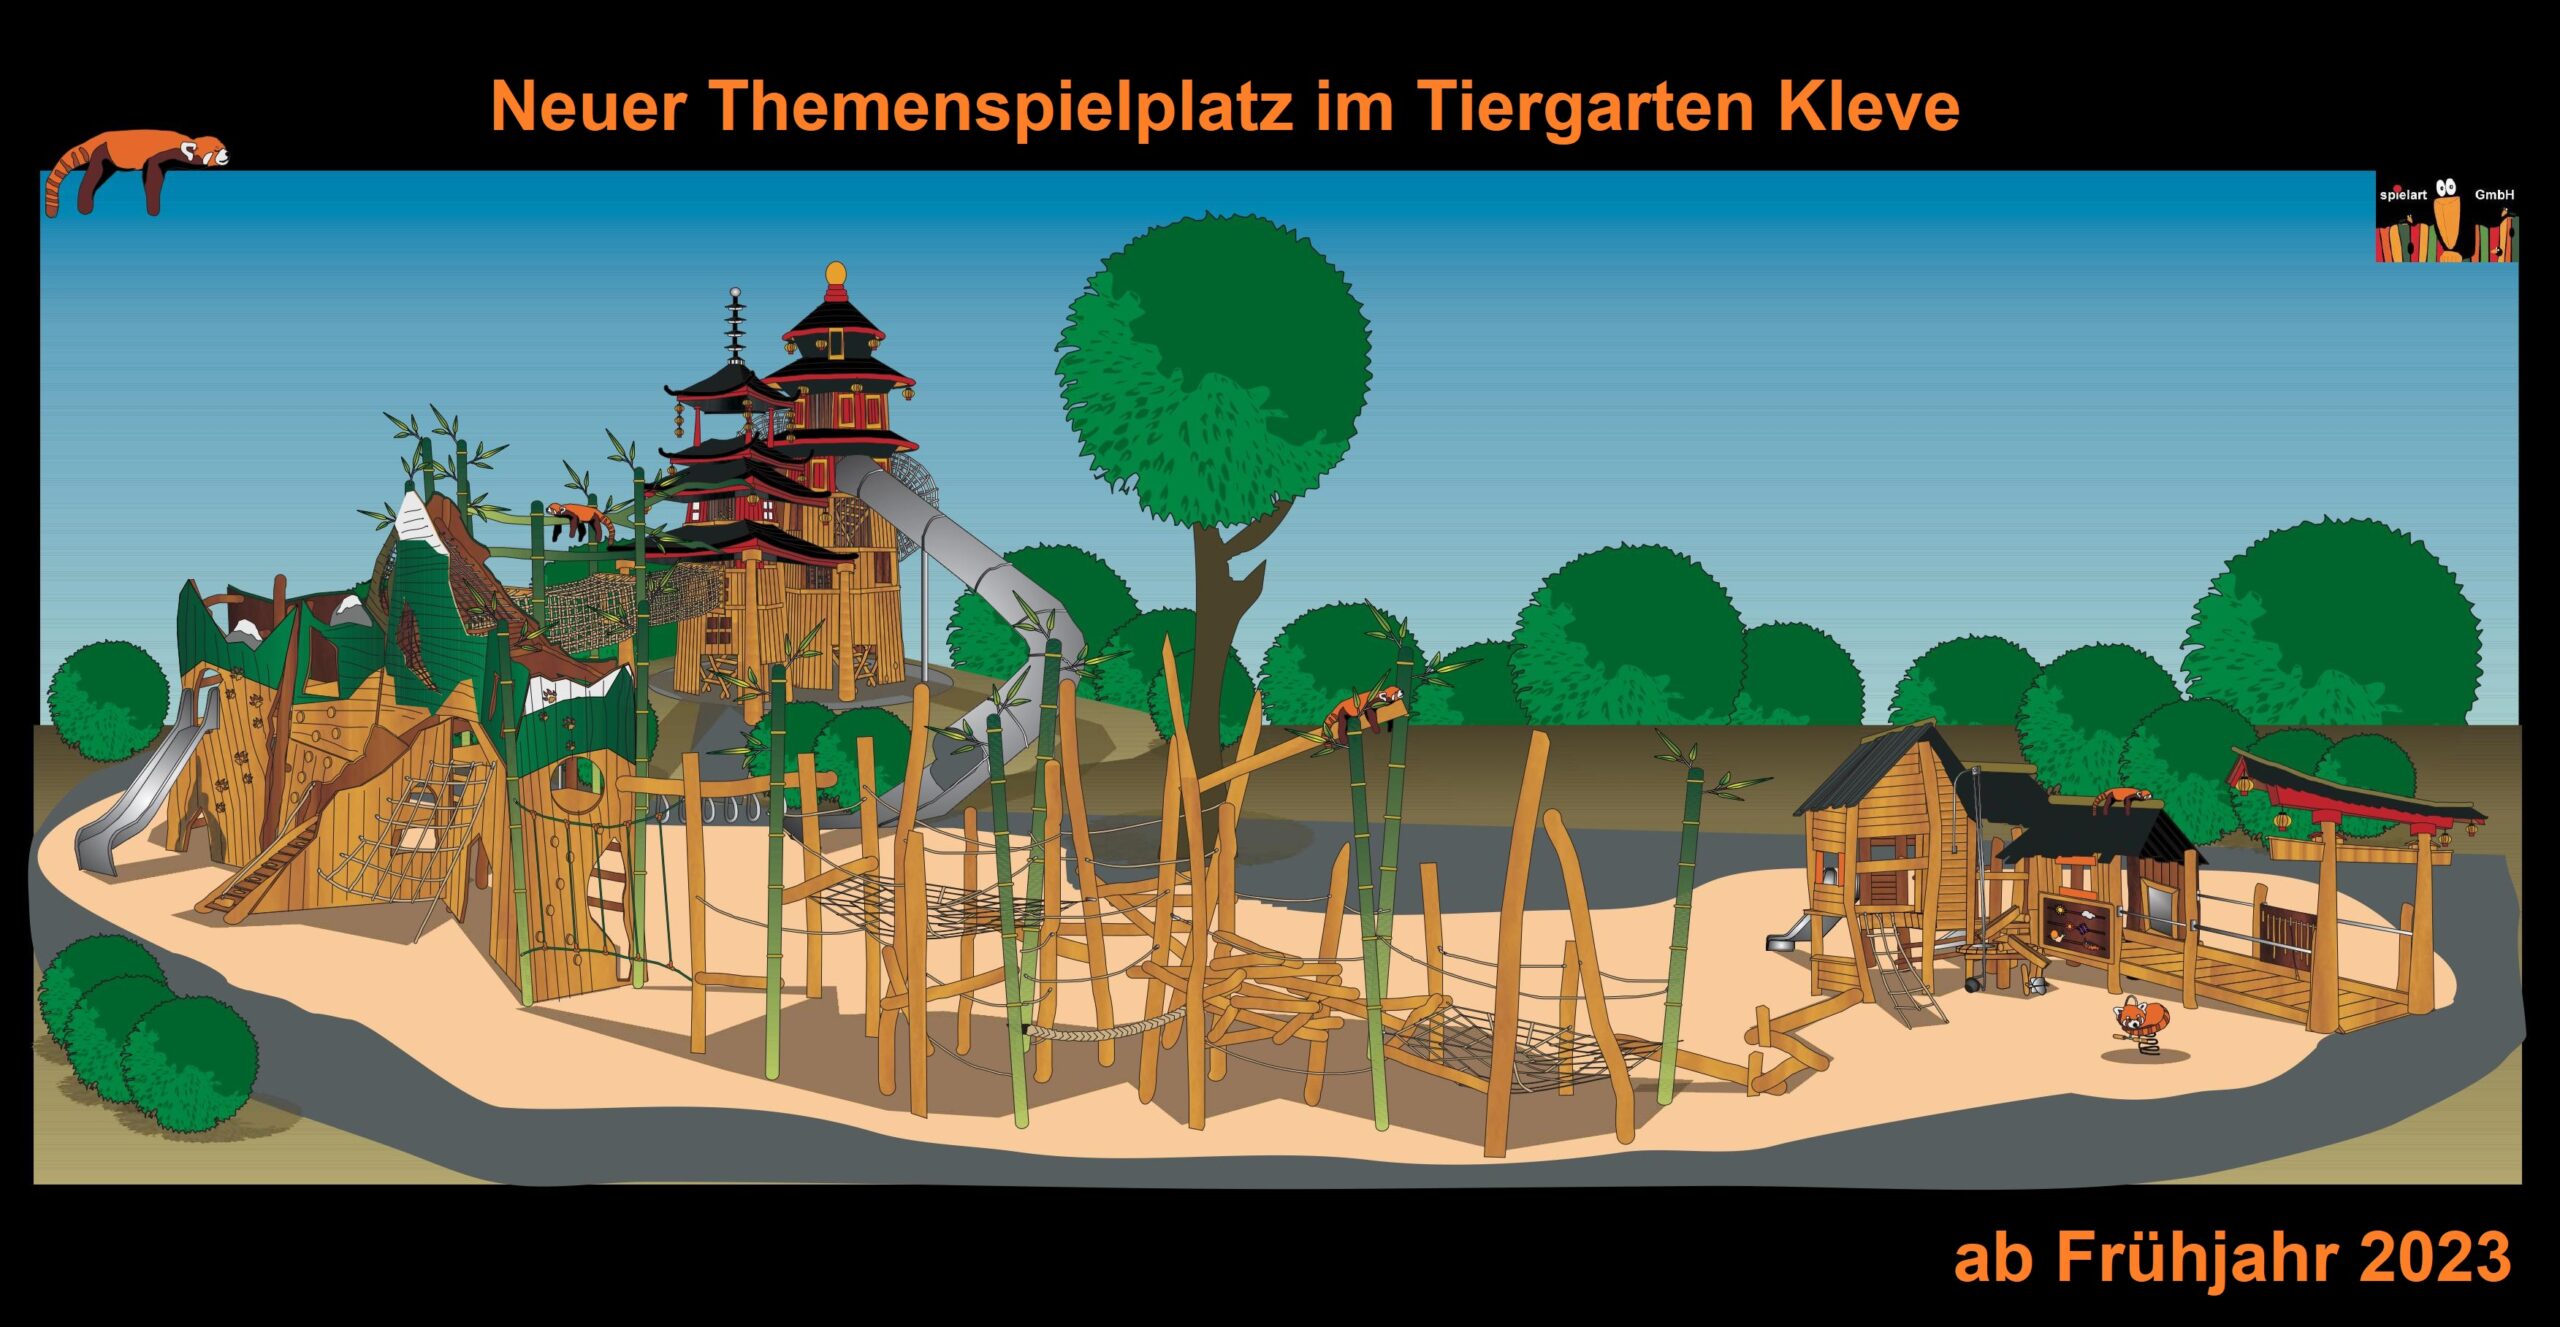 Neuer Themenspielplatz im Tiergarten Kleve ab Ende April 2023 (Urheberrechte Spielart)